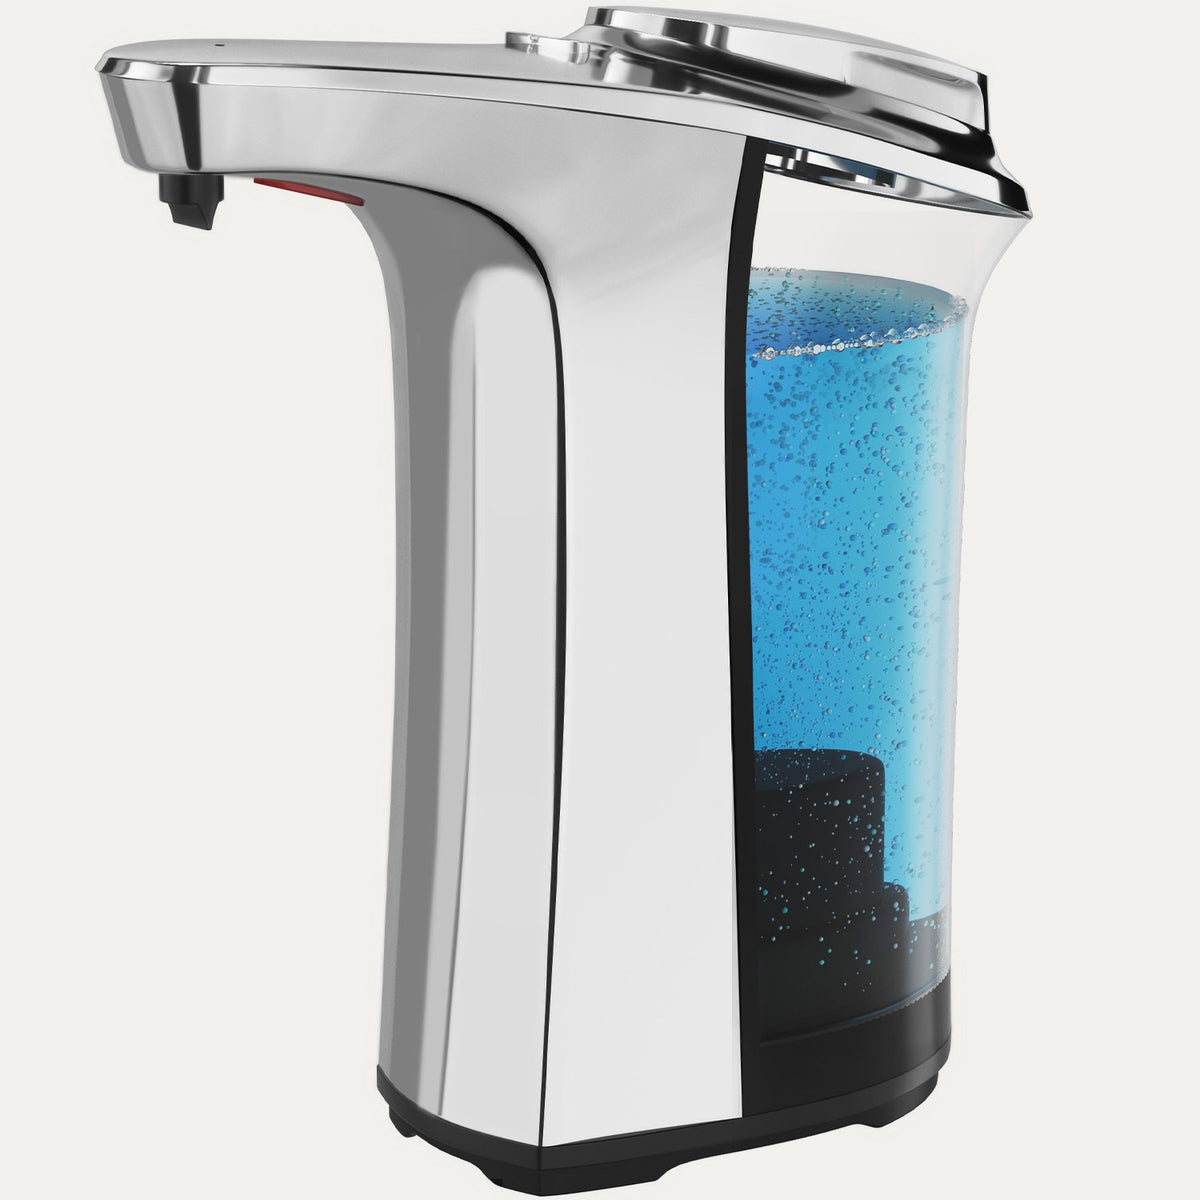 Automatic Soap Dispenser – Everlasting Comfort